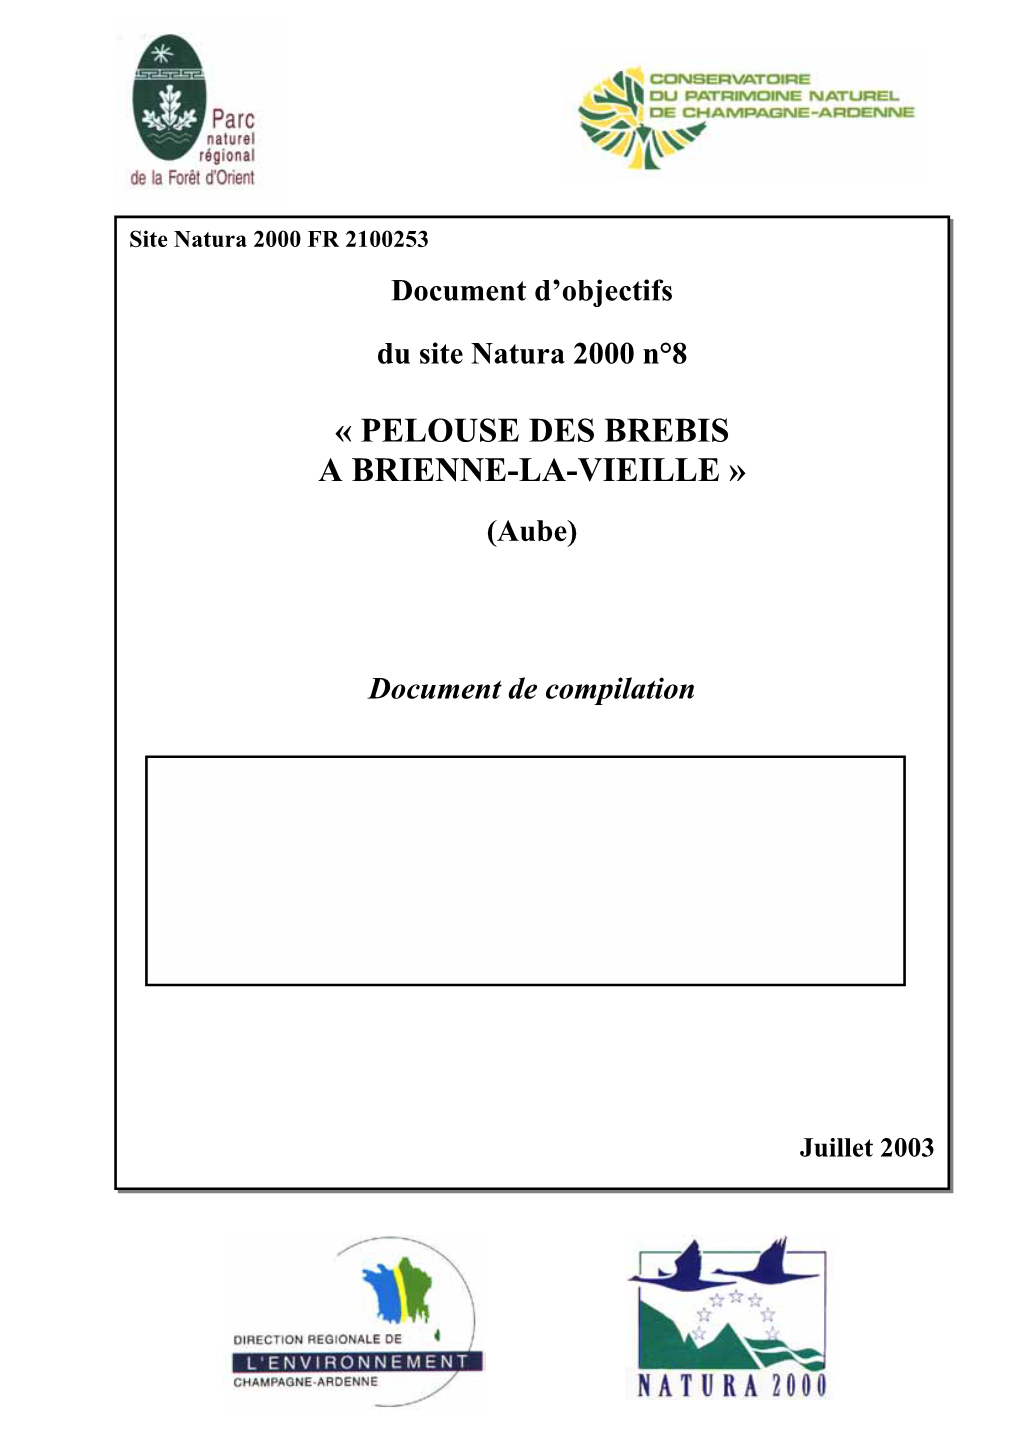 « Pelouse Des Brebis a Brienne-La-Vieille »